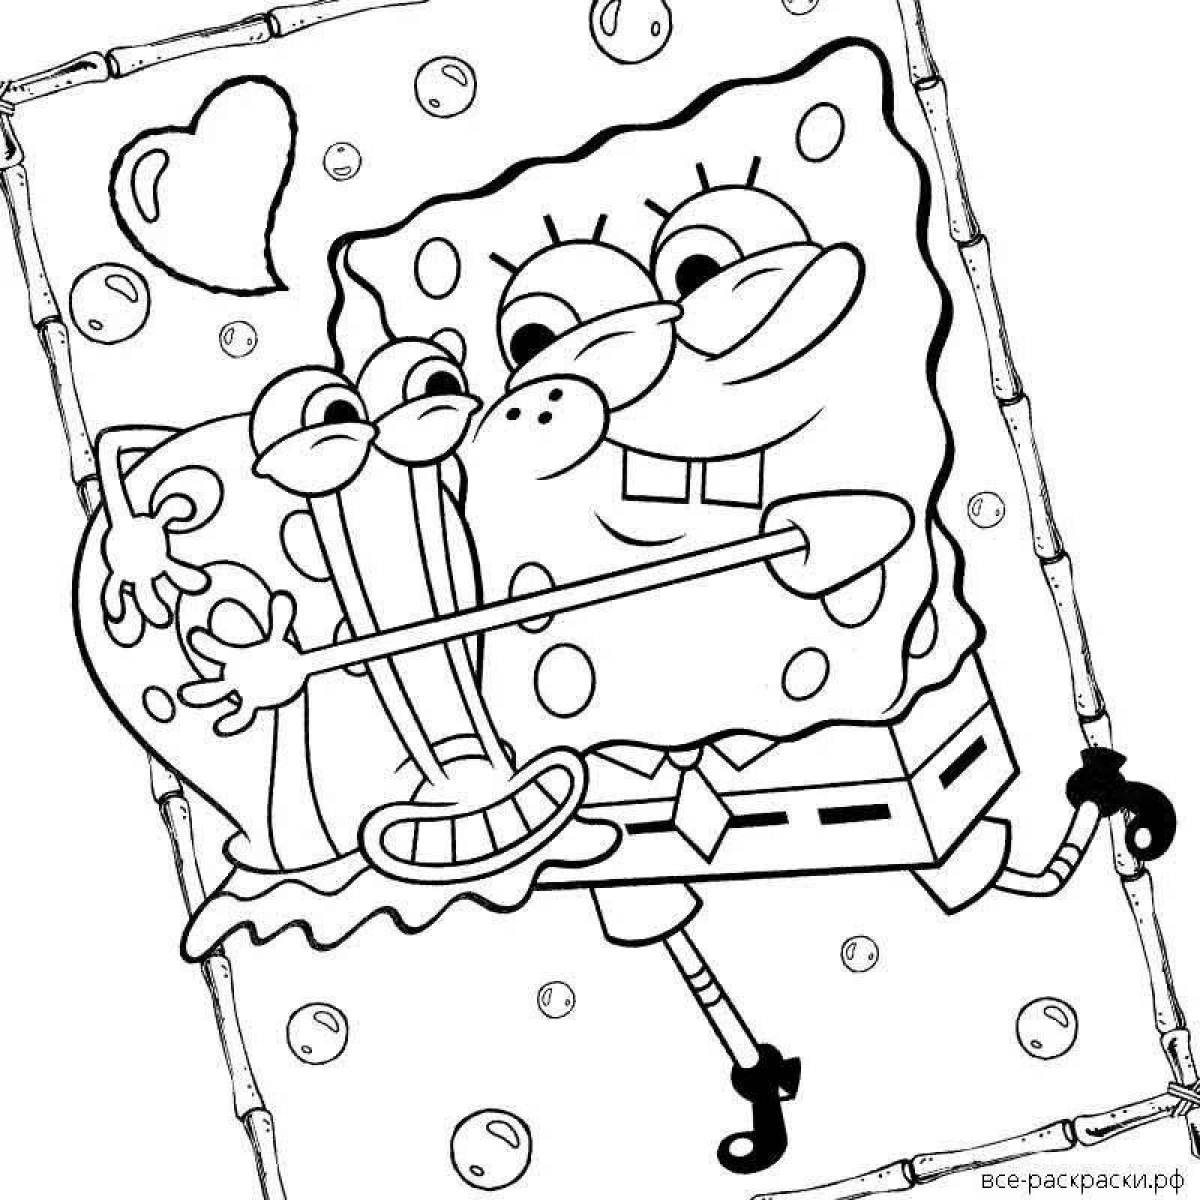 Spongebob fun coloring by numbers